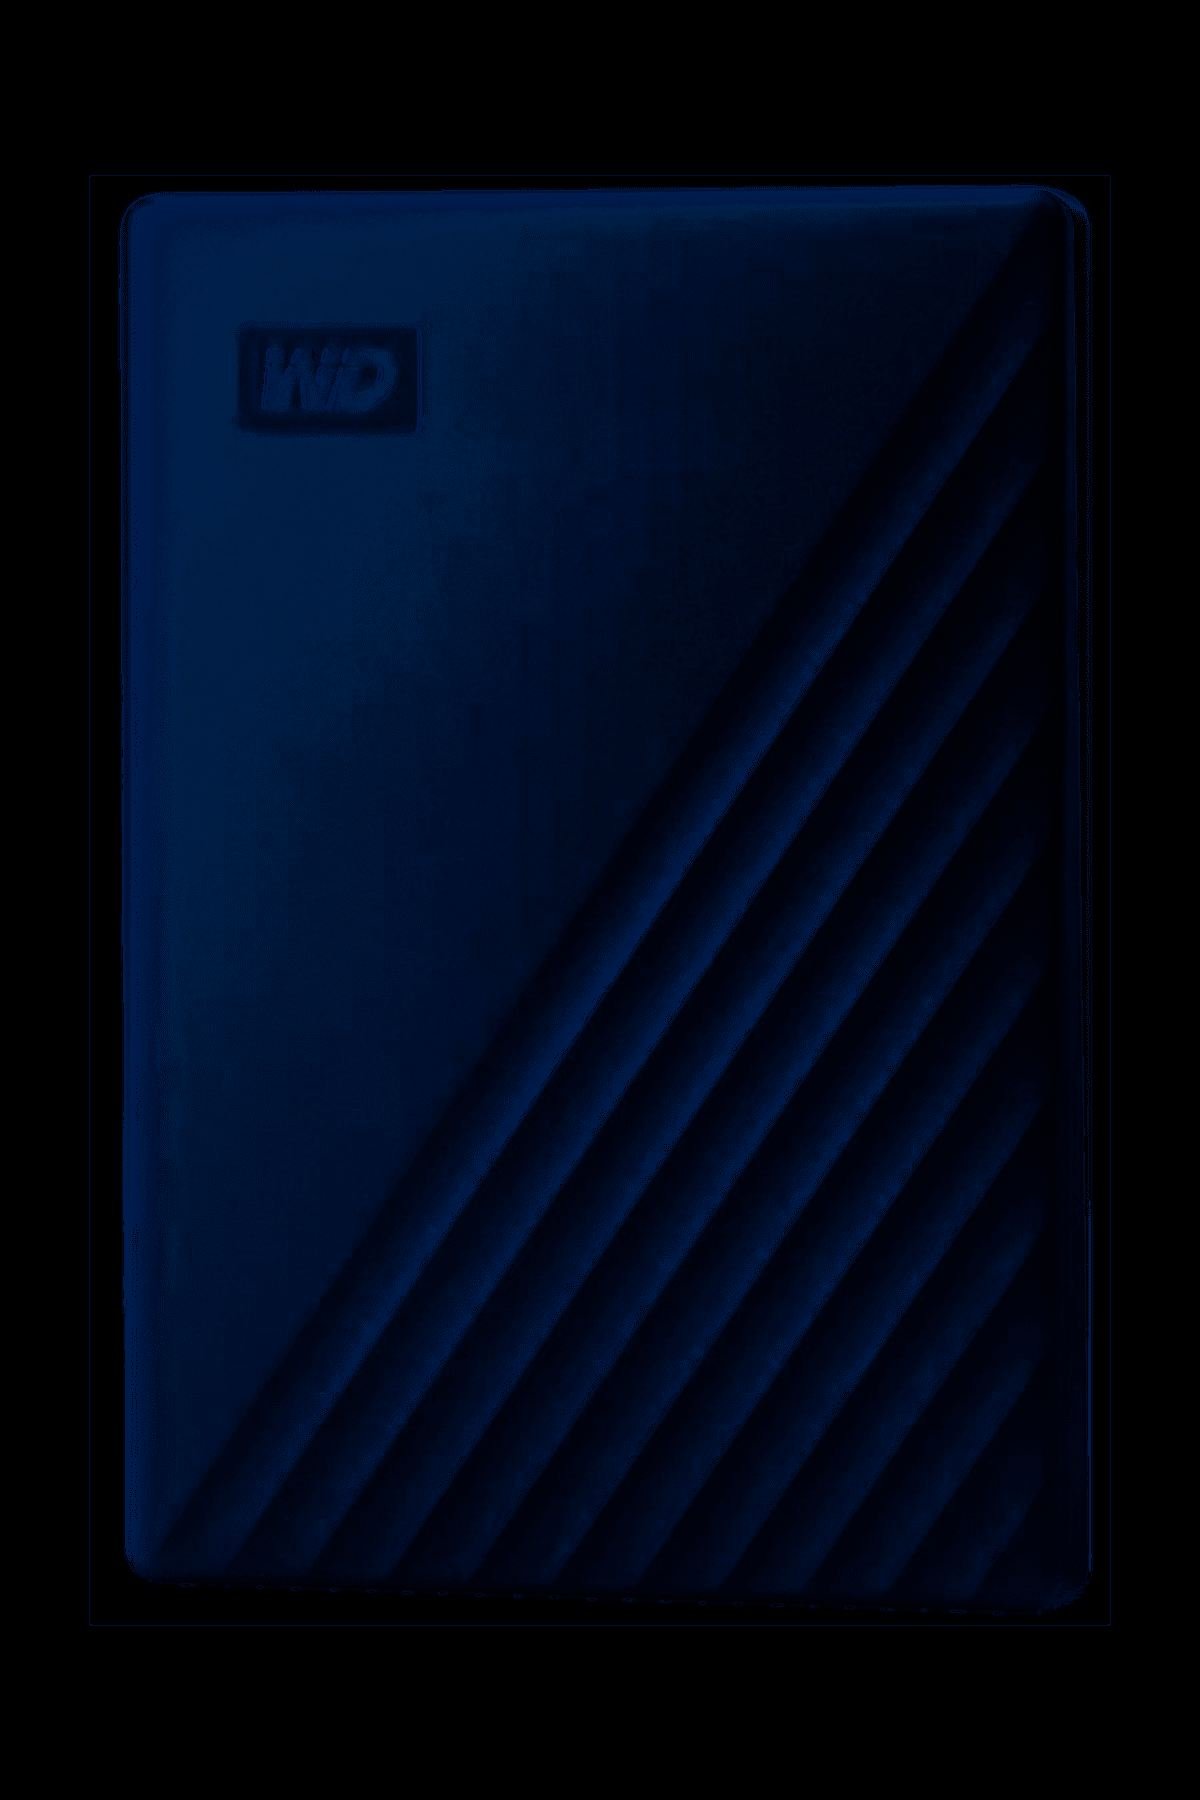 WDBYVG0020BRD-WESN 2TB USB 3.0 2.5